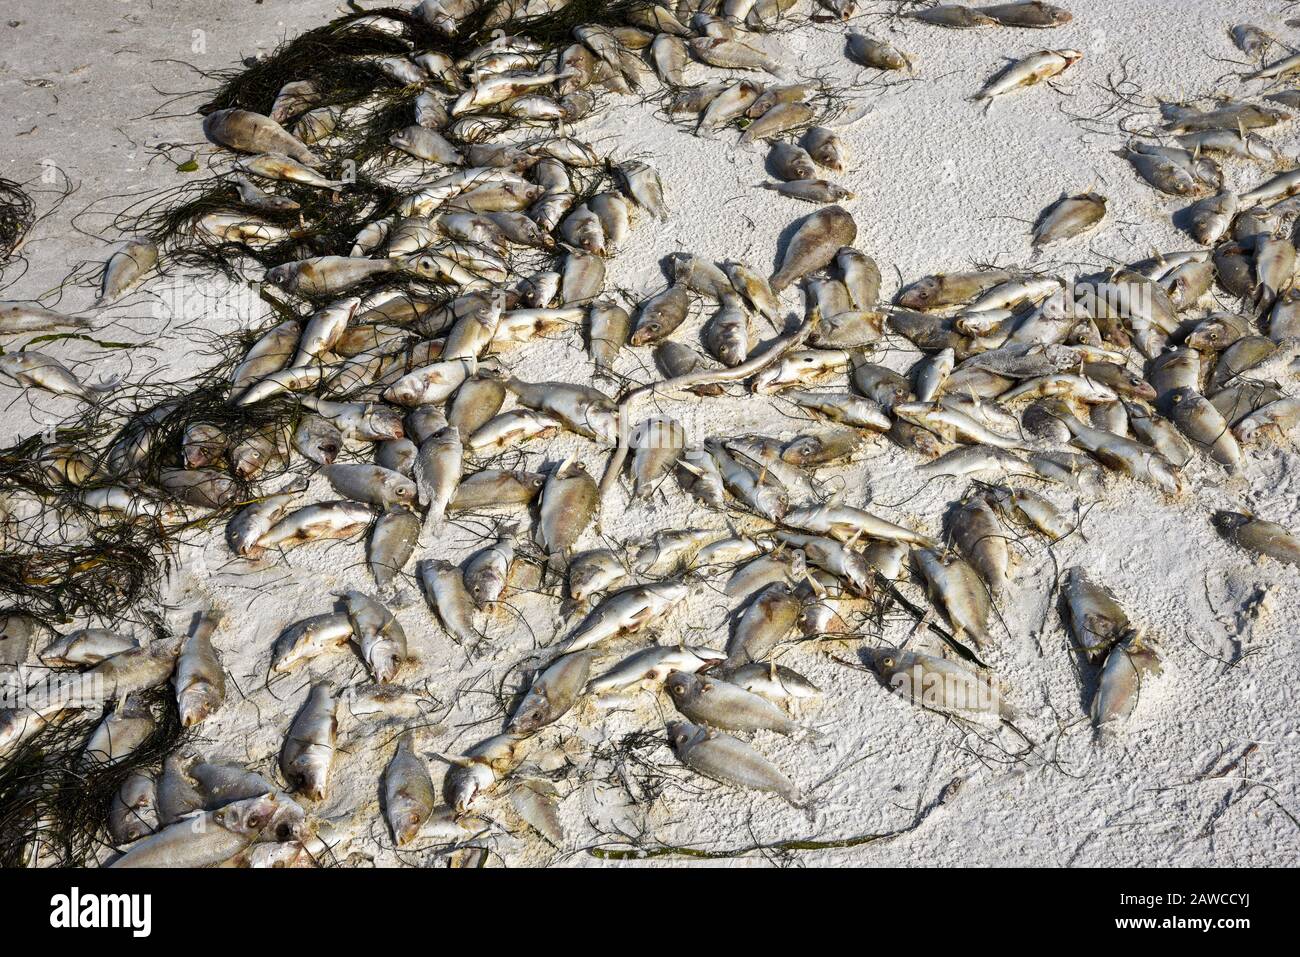 Roter Tide: Strand bedeckt mit tote Fische, die durch die Blüte giftiger Rotalgen getötet wurden. Stockfoto